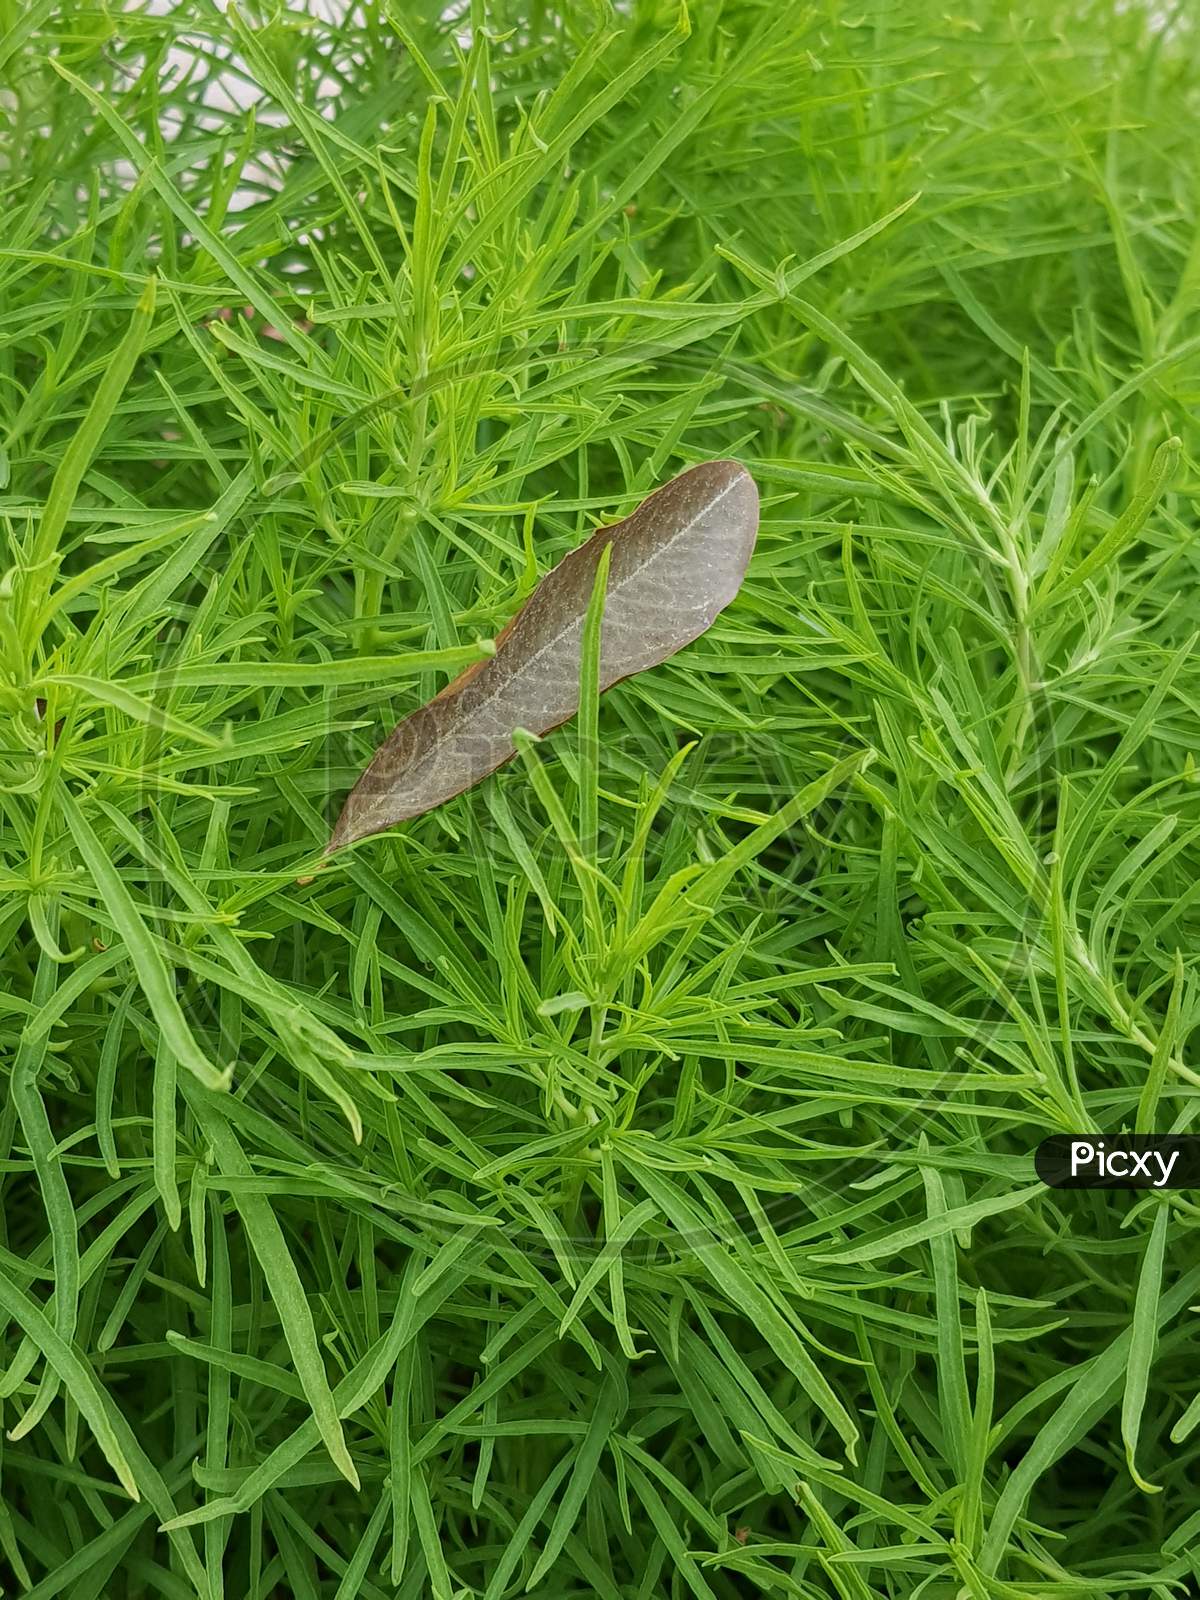 Broken brown leaf on green grass